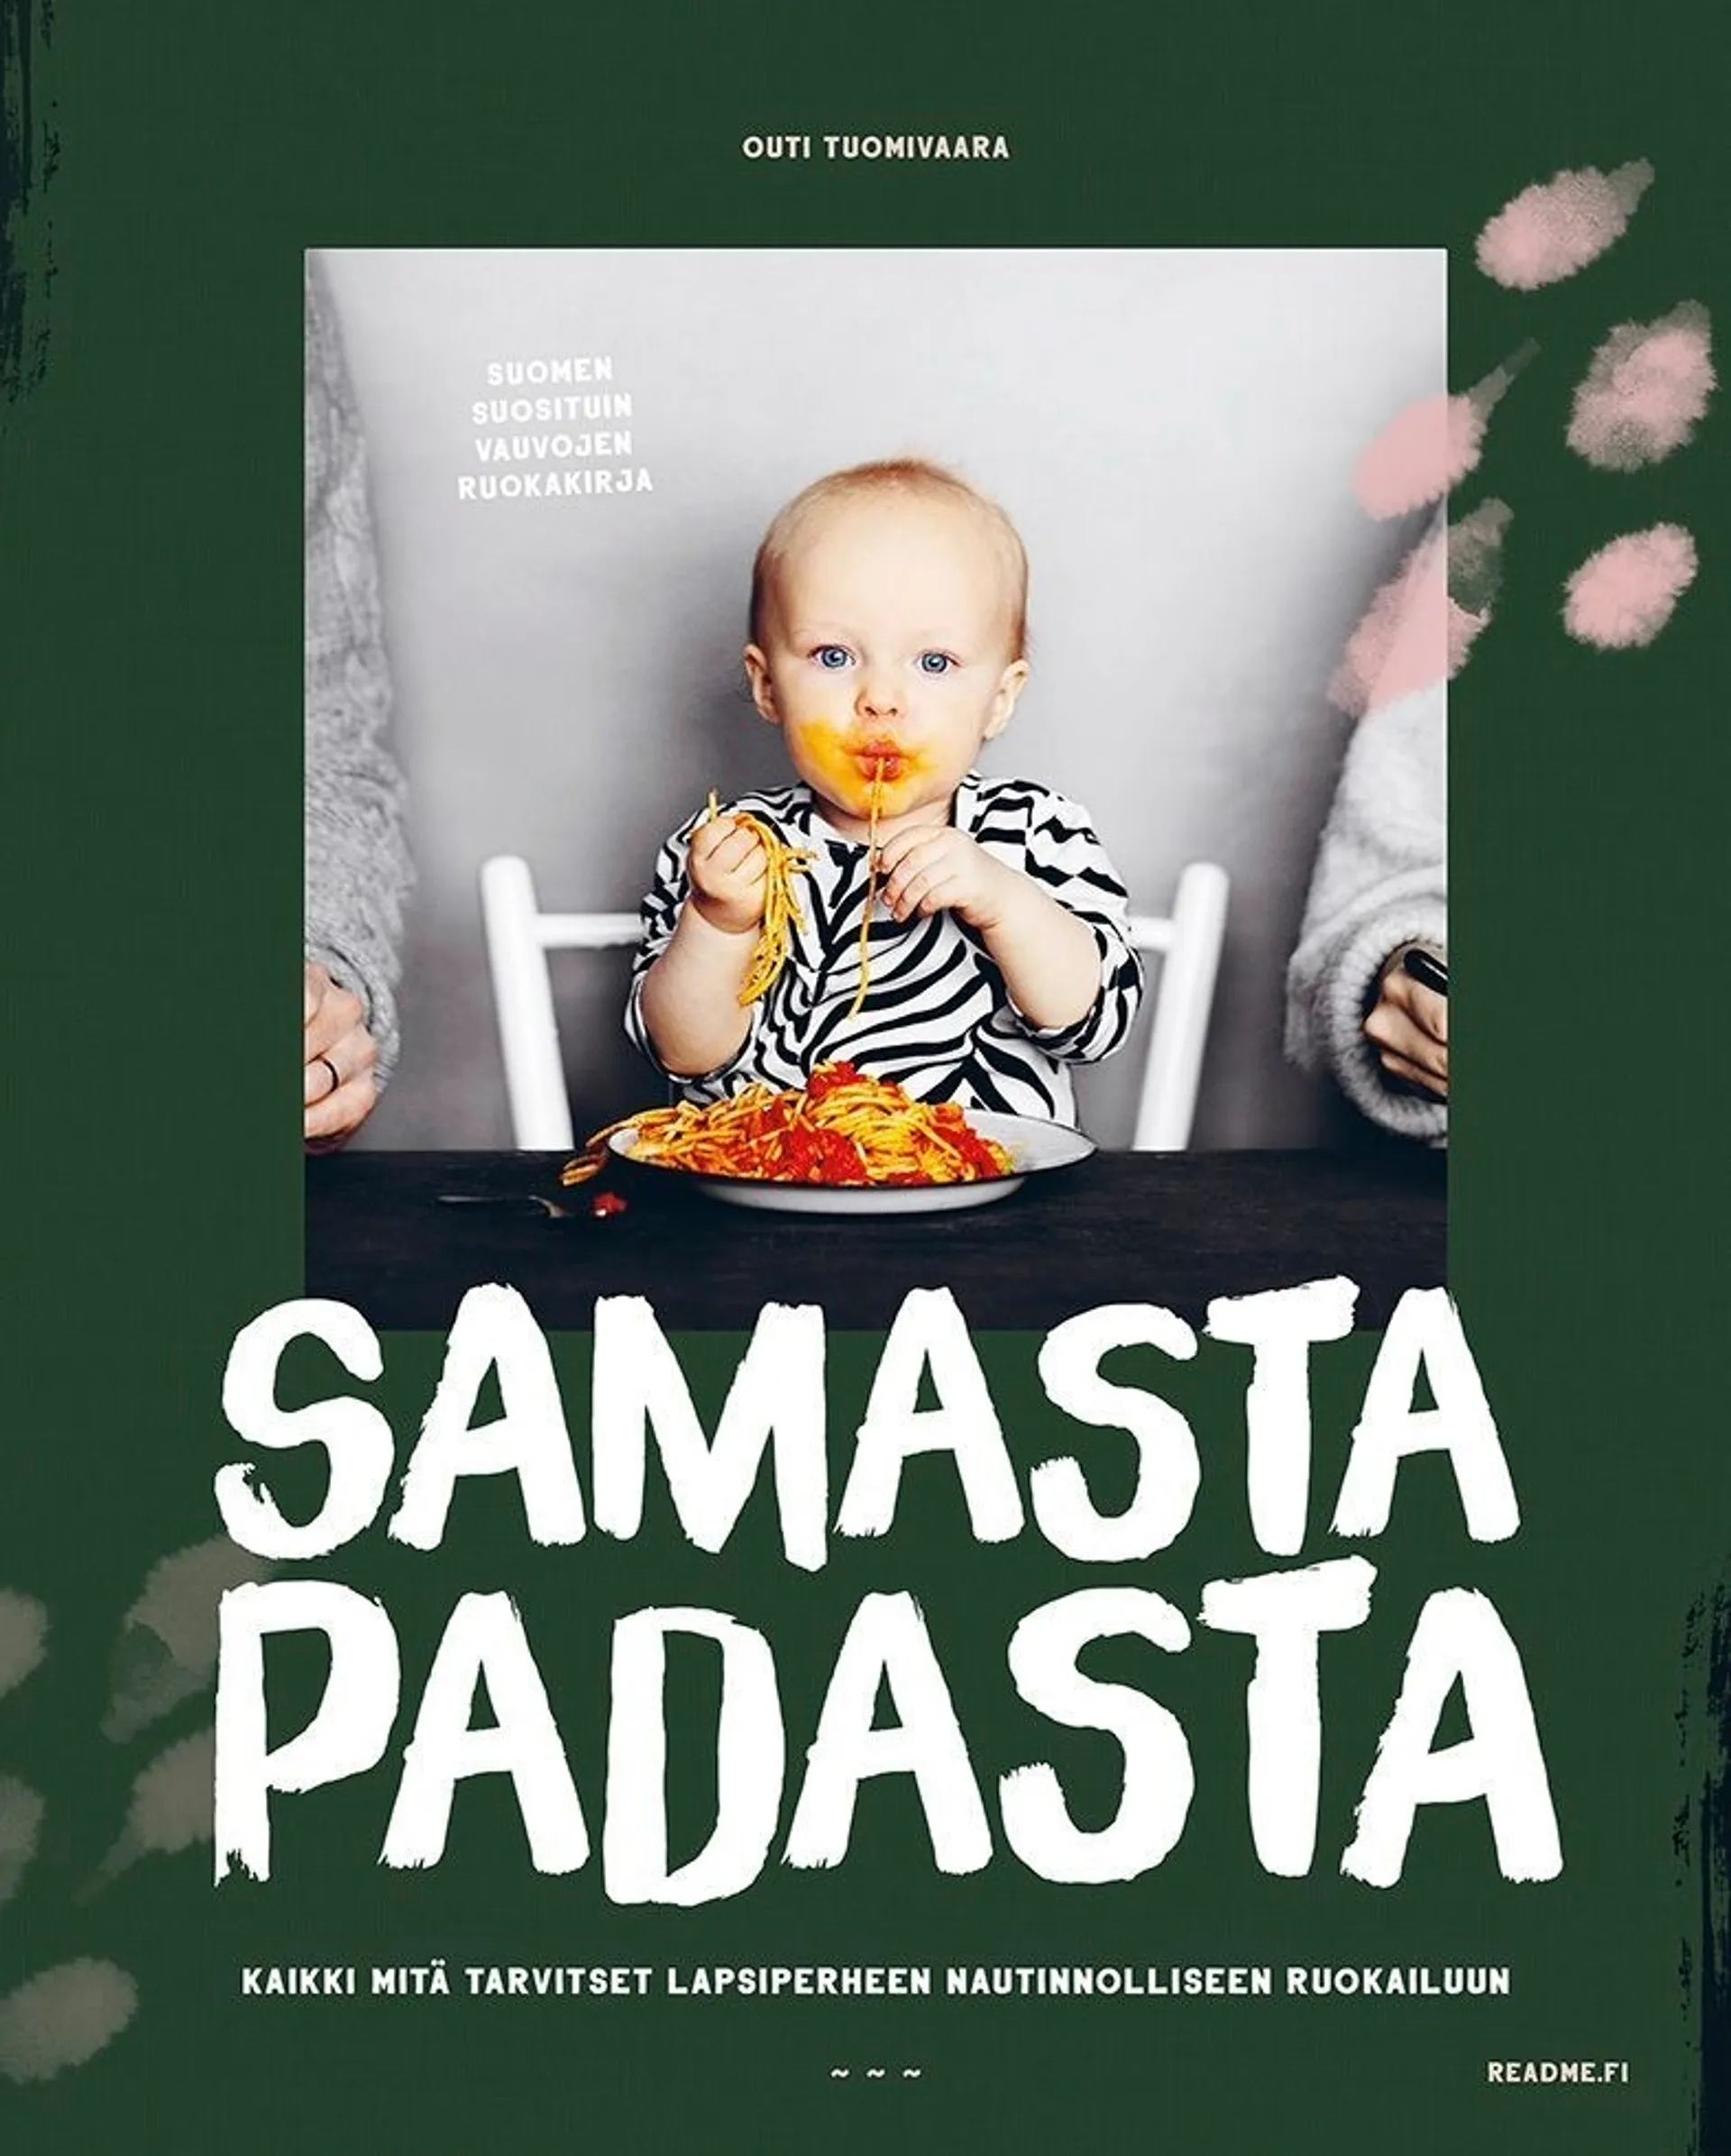 Tuomivaara, Samasta padasta I & II (2024) - Kaikki mitä tarvitset lapsiperheen nautinnolliseen ruokailuun